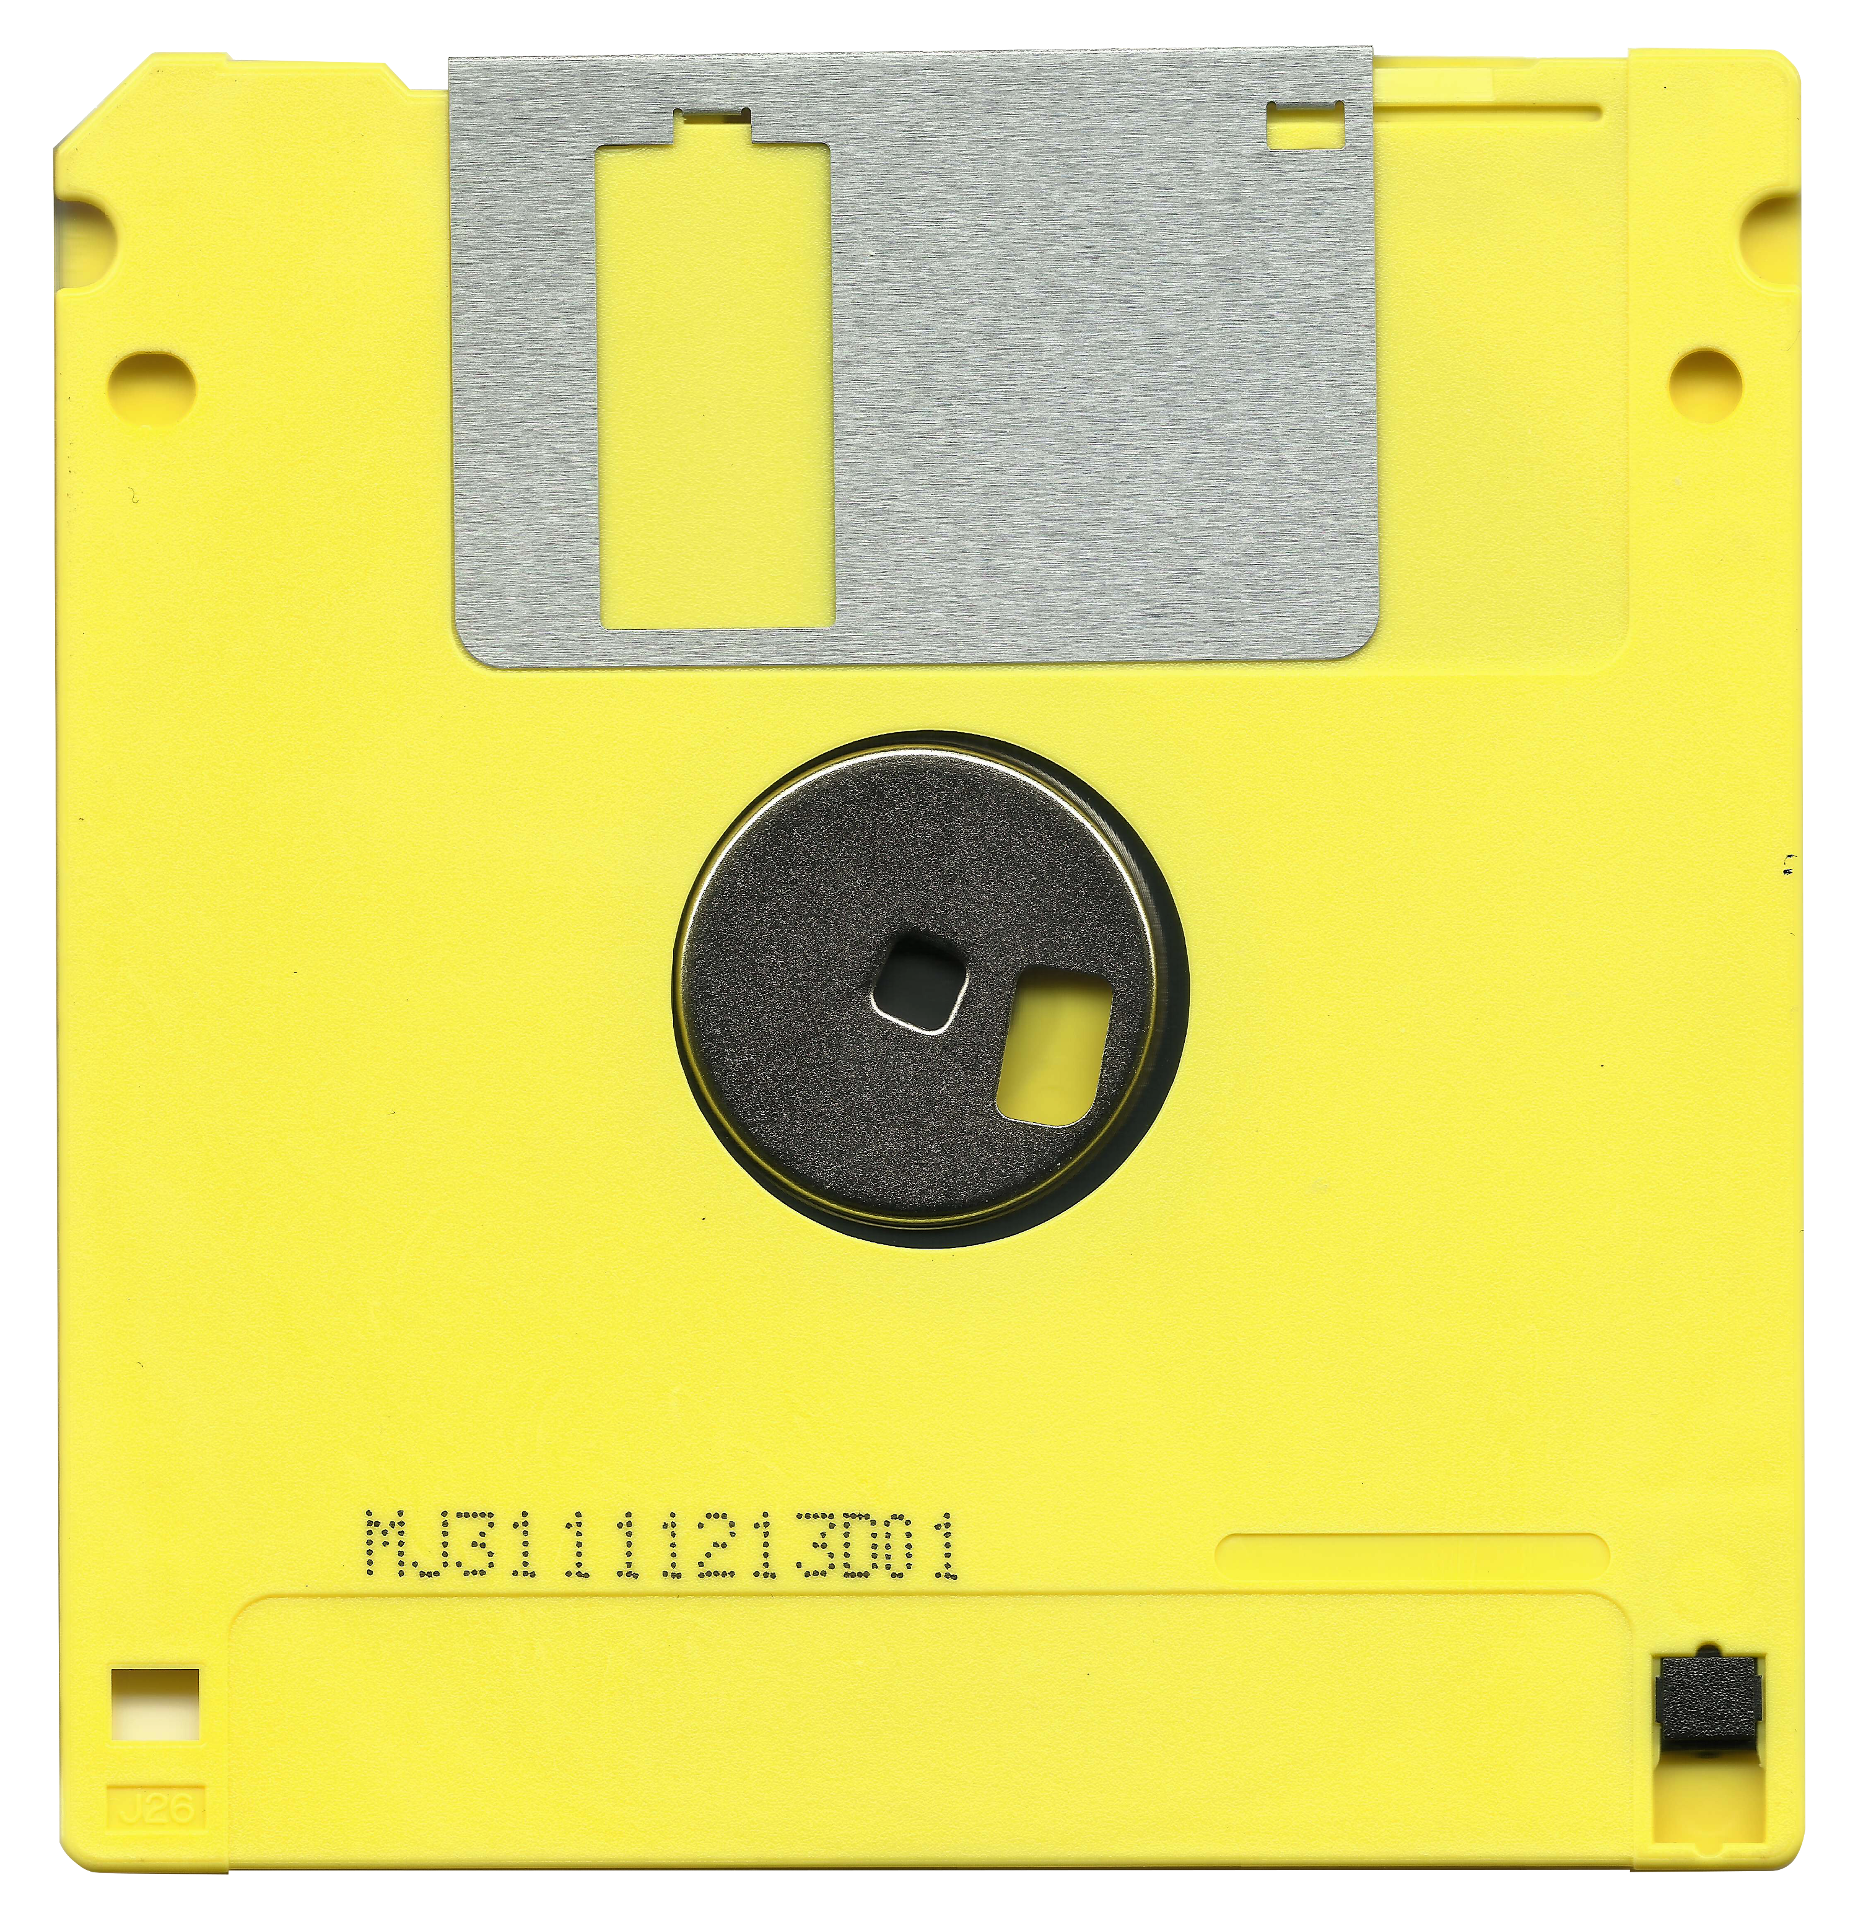 Un disquete, ¿es retro, moderno o viejuno?